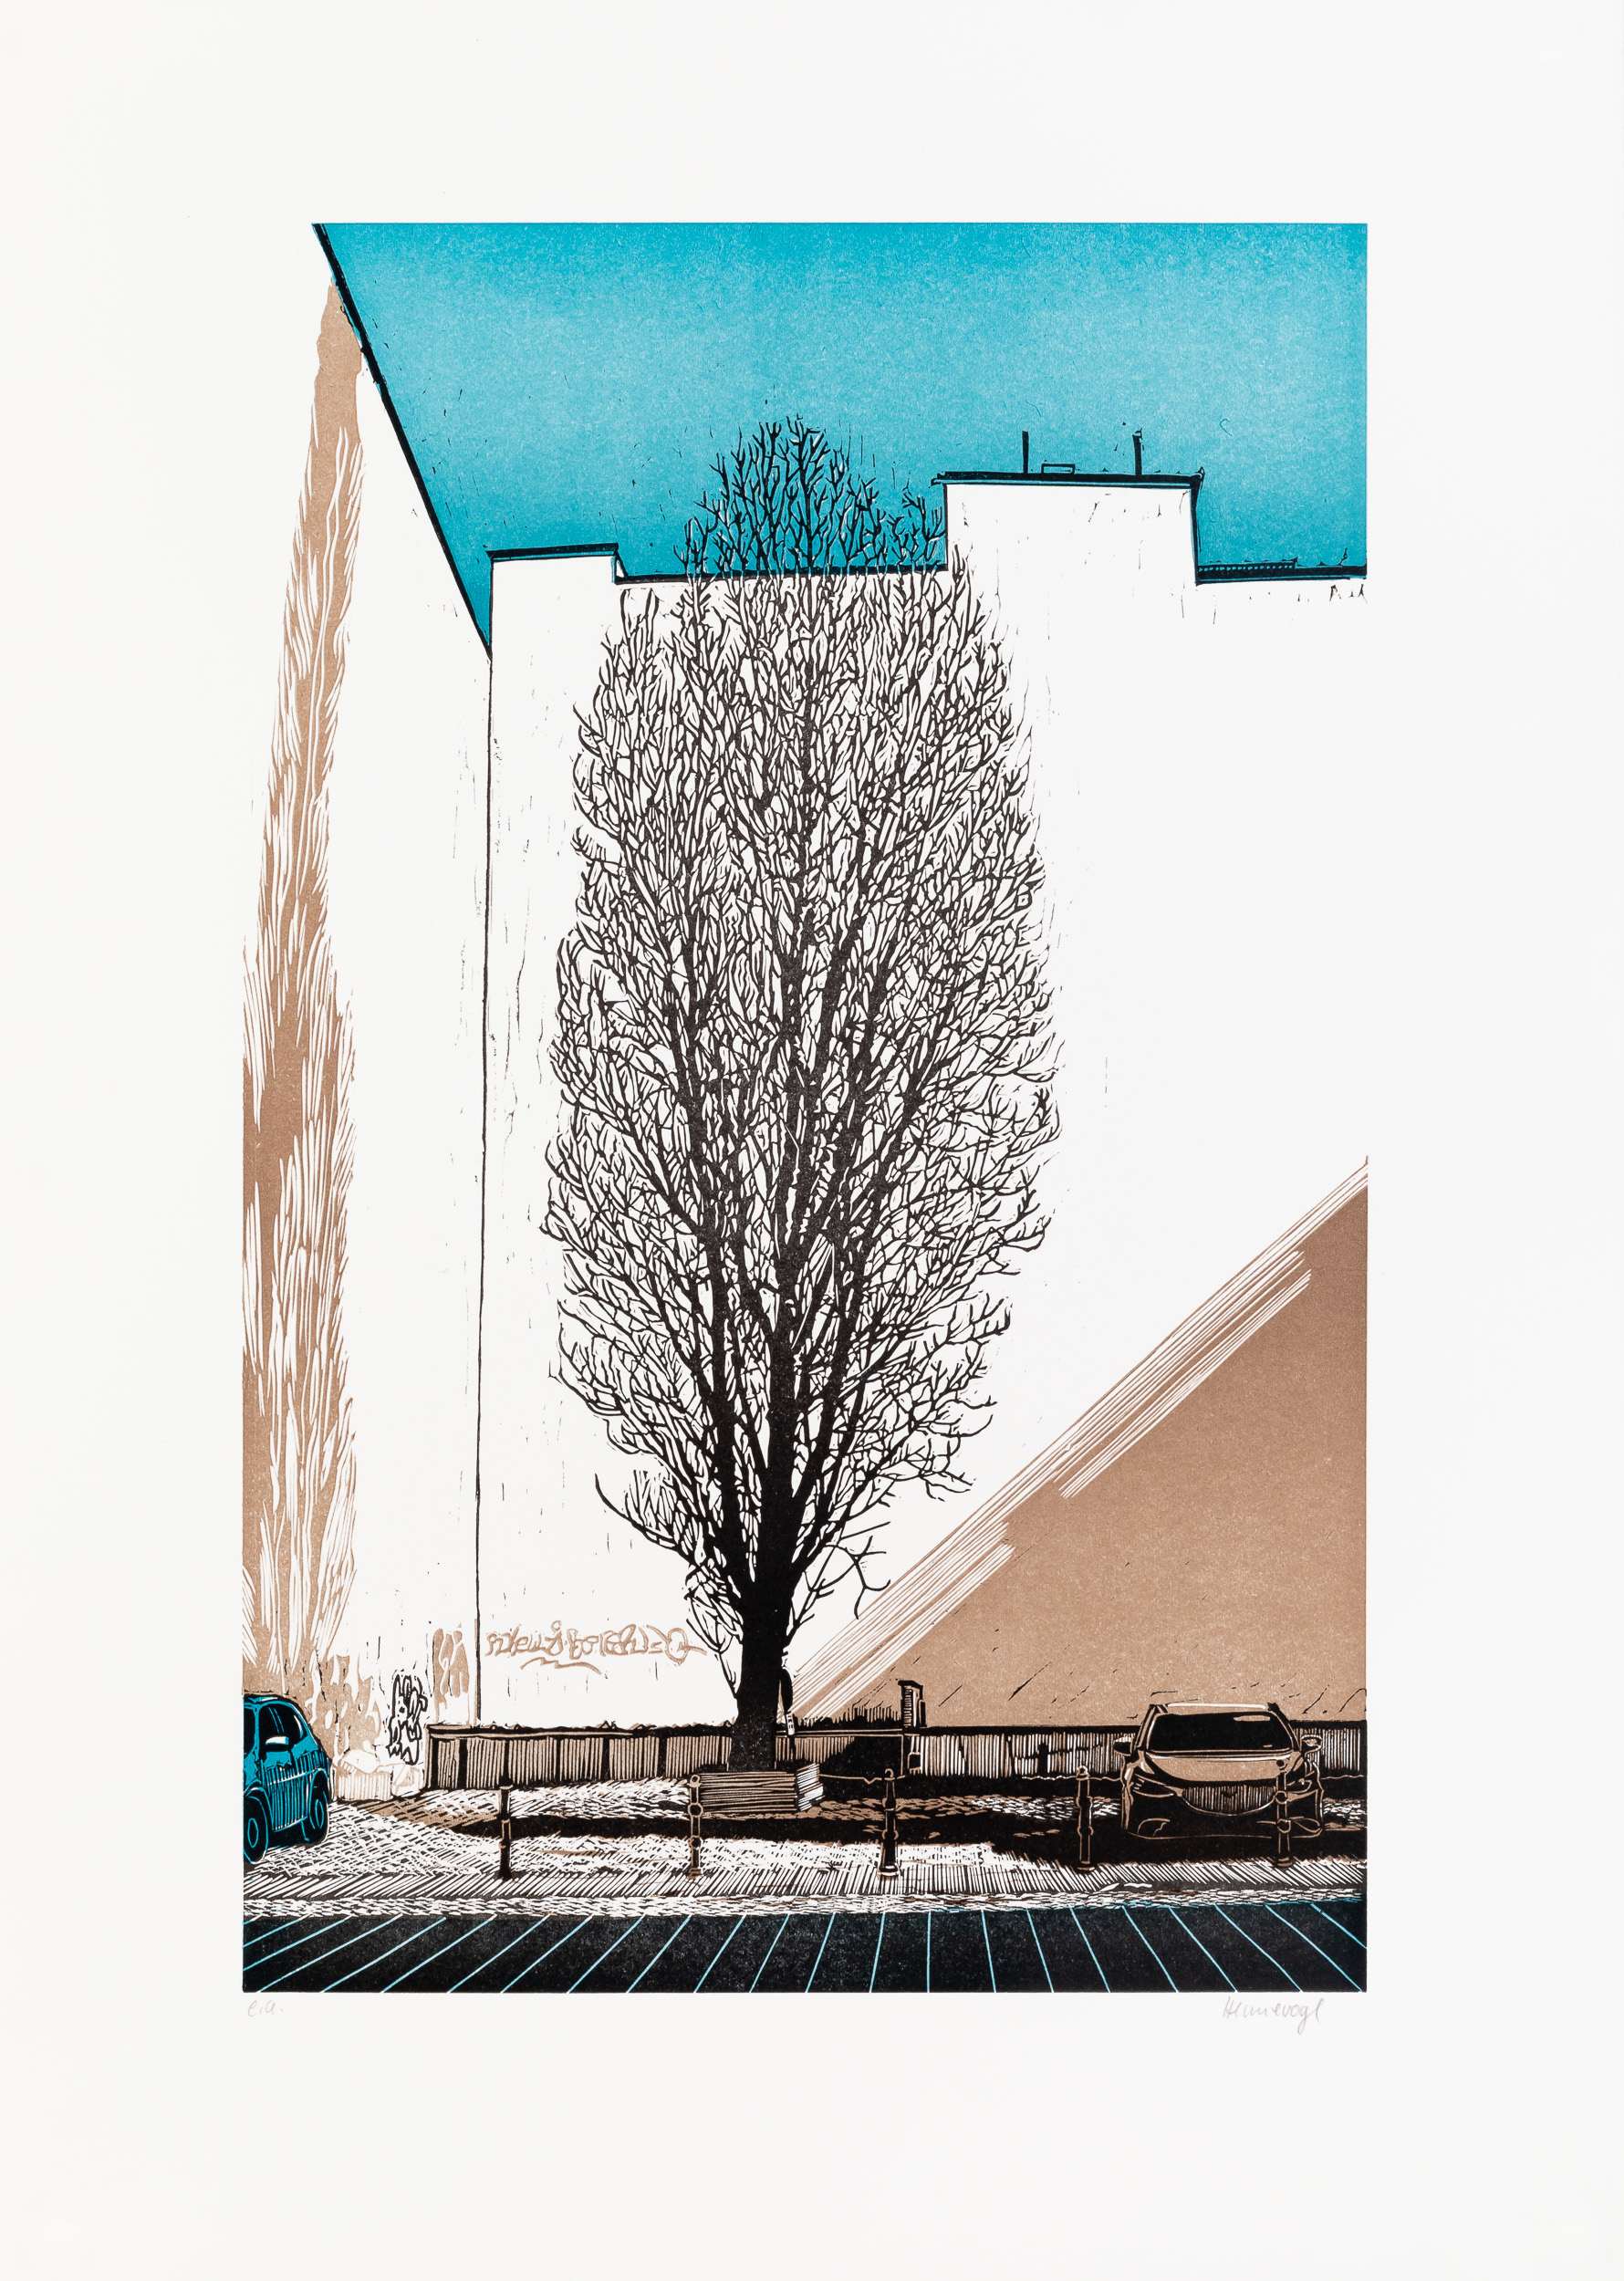 Philipp Hennevogl - Ecke, 2018 Linolschnitt, Auftrag von Tabor Presse Berlin “Grafik-Kalender 2019”